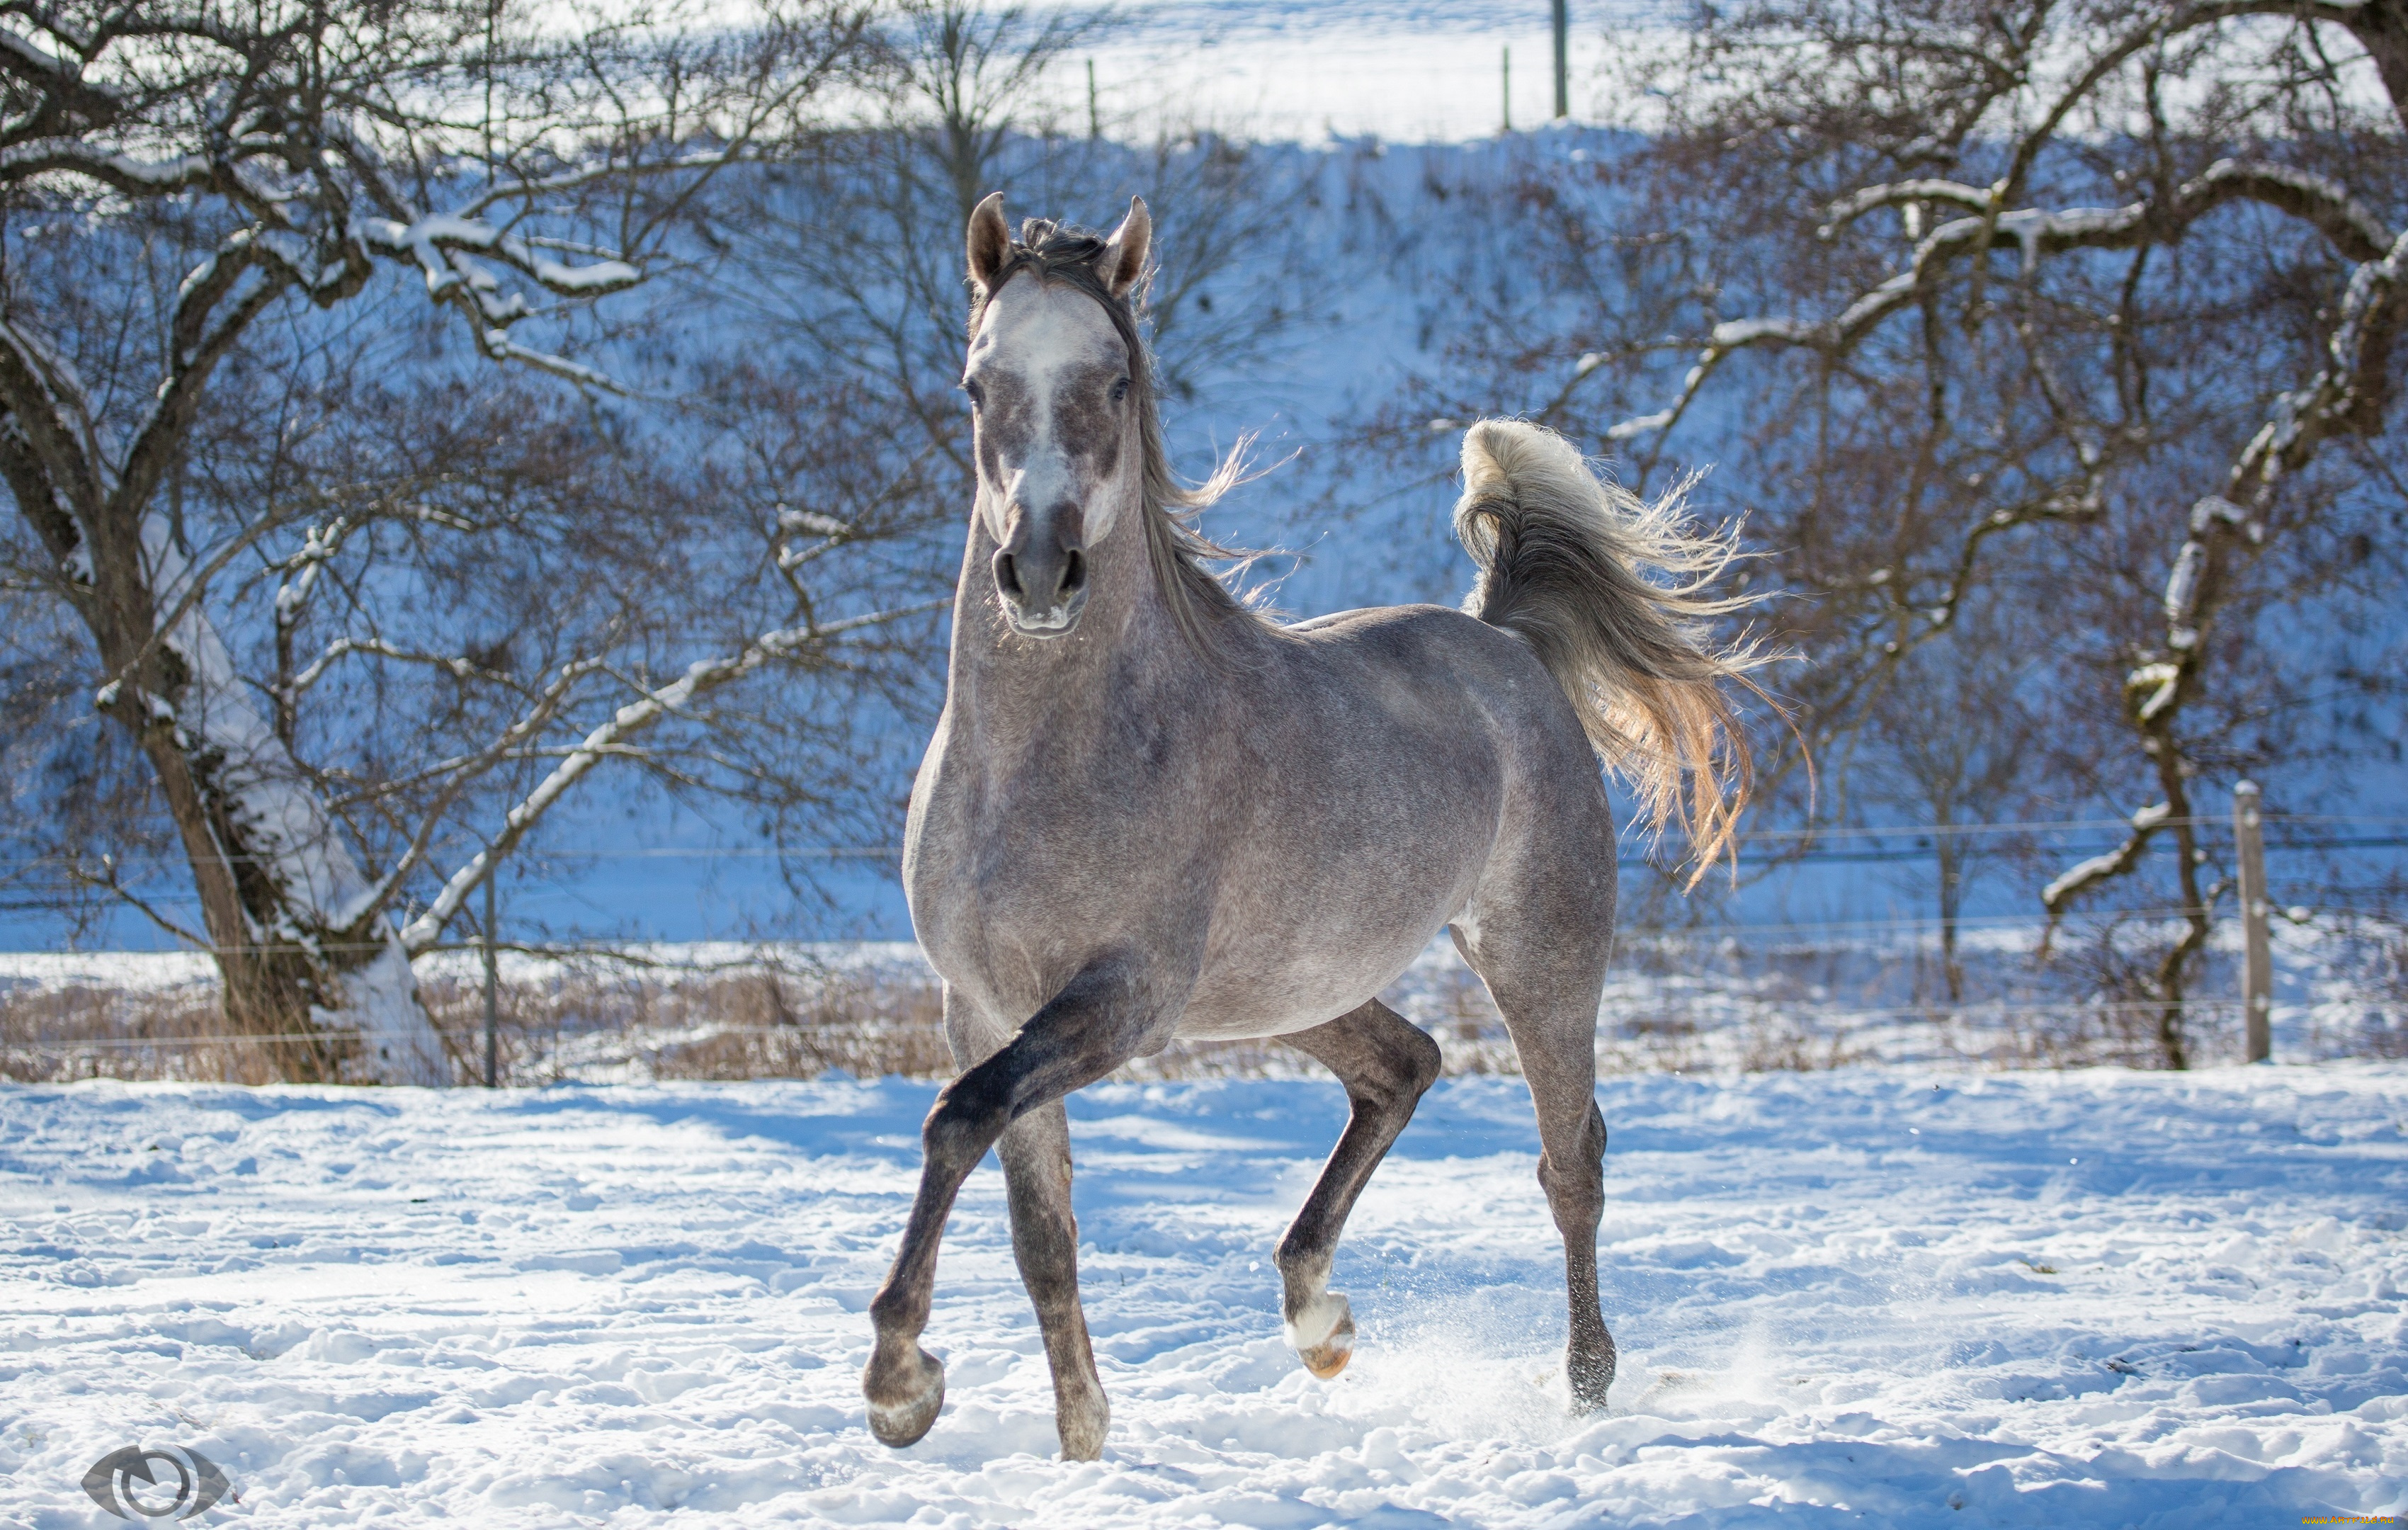 автор, , oliverseitz, животные, лошади, конь, серый, бег, движение, грация, загон, зима, снег